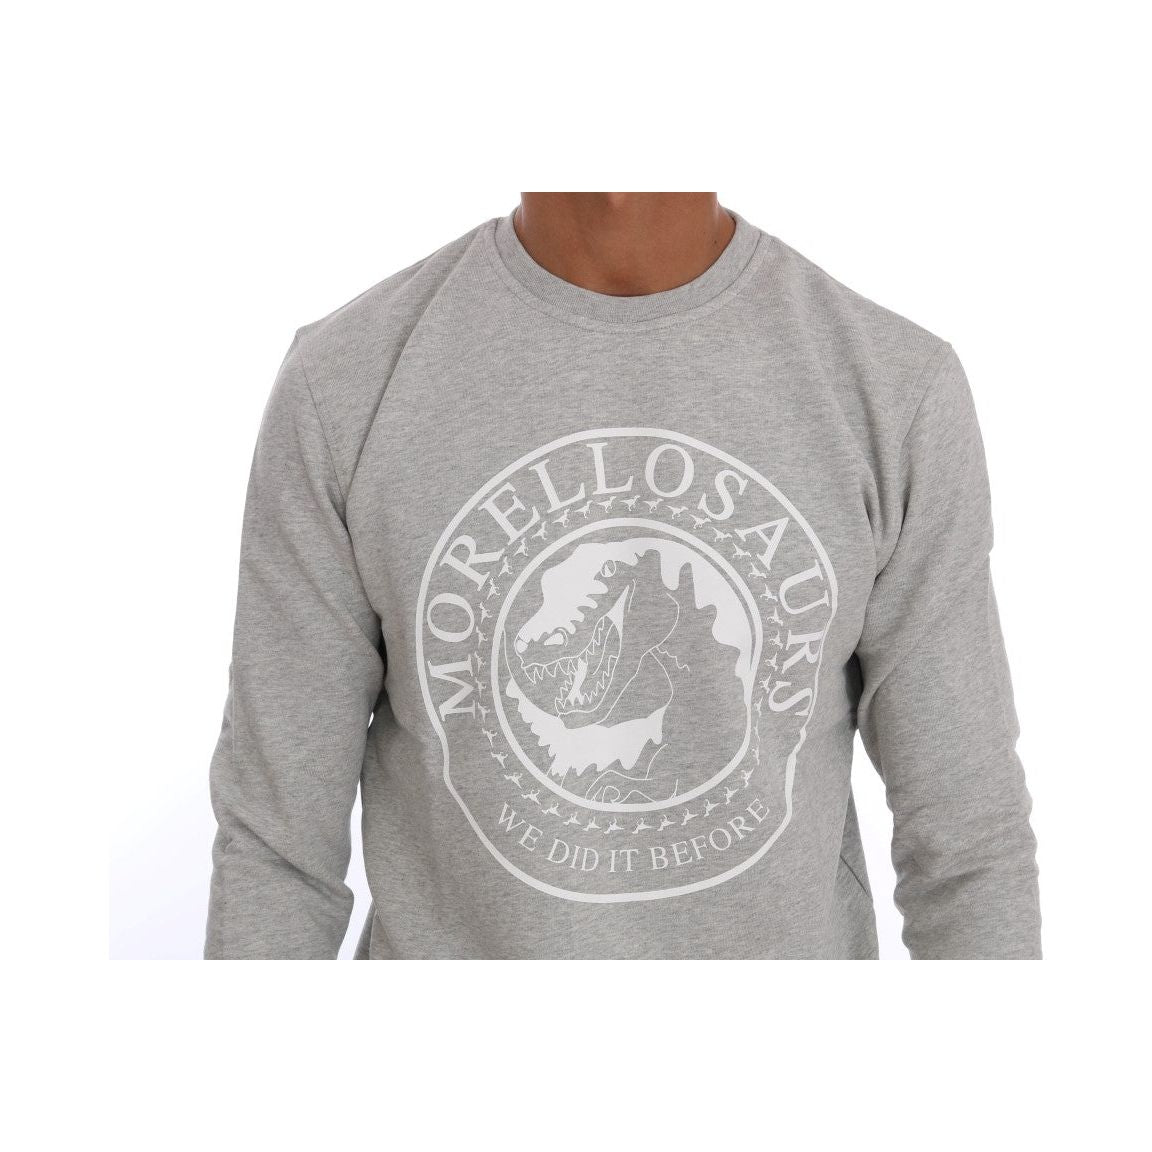 Frankie Morello Chic Morellosaurs Crewneck Cotton Sweater gray-cotton-crewneck-pullover-sweater